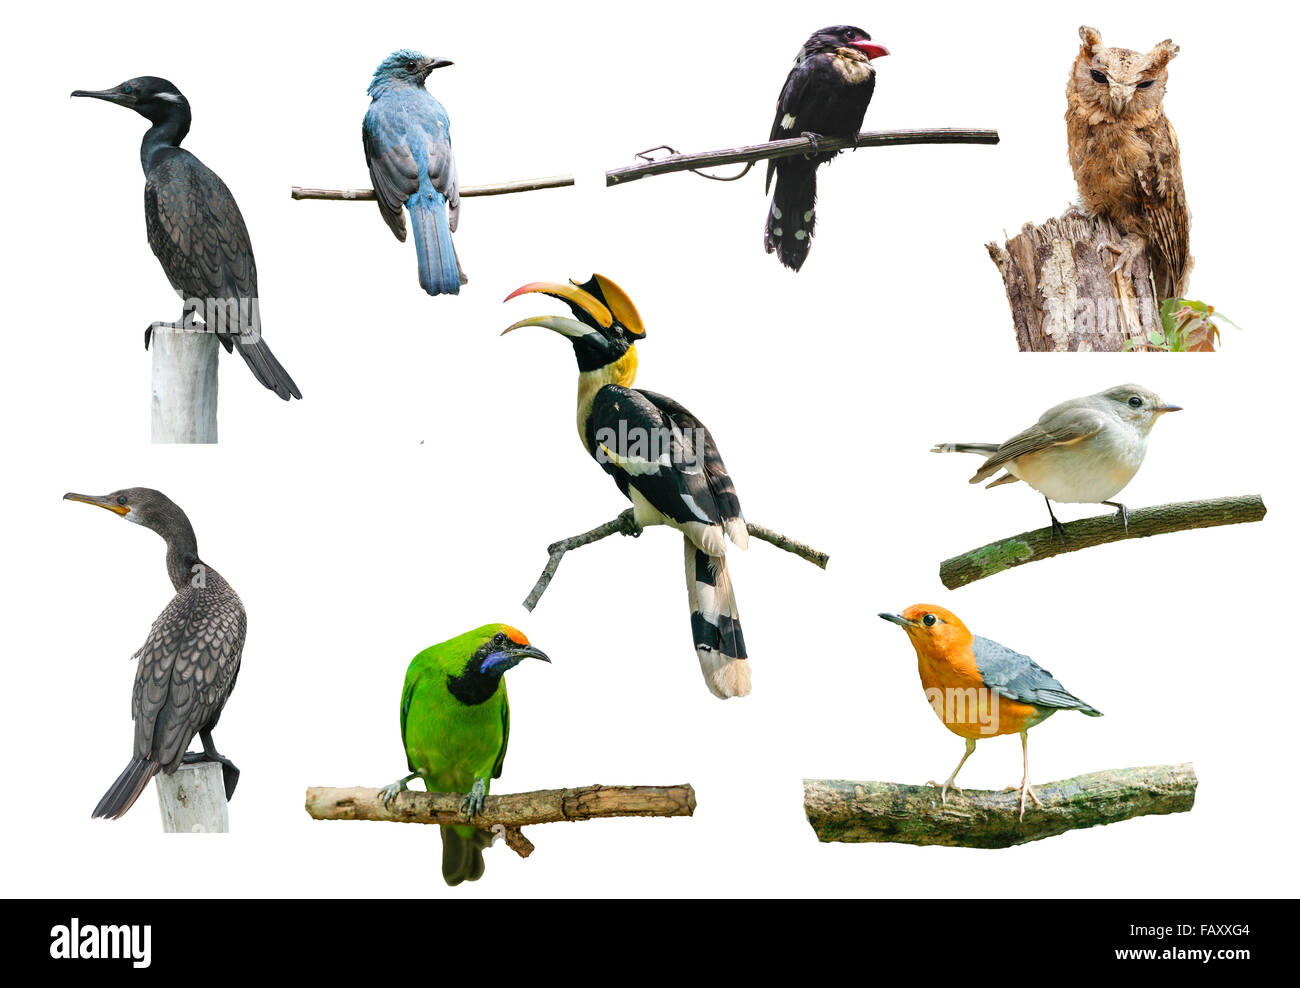 Ensemble d'oiseaux sur fond blanc, calao, boardbill, Owl et d'autres oiseaux Banque D'Images